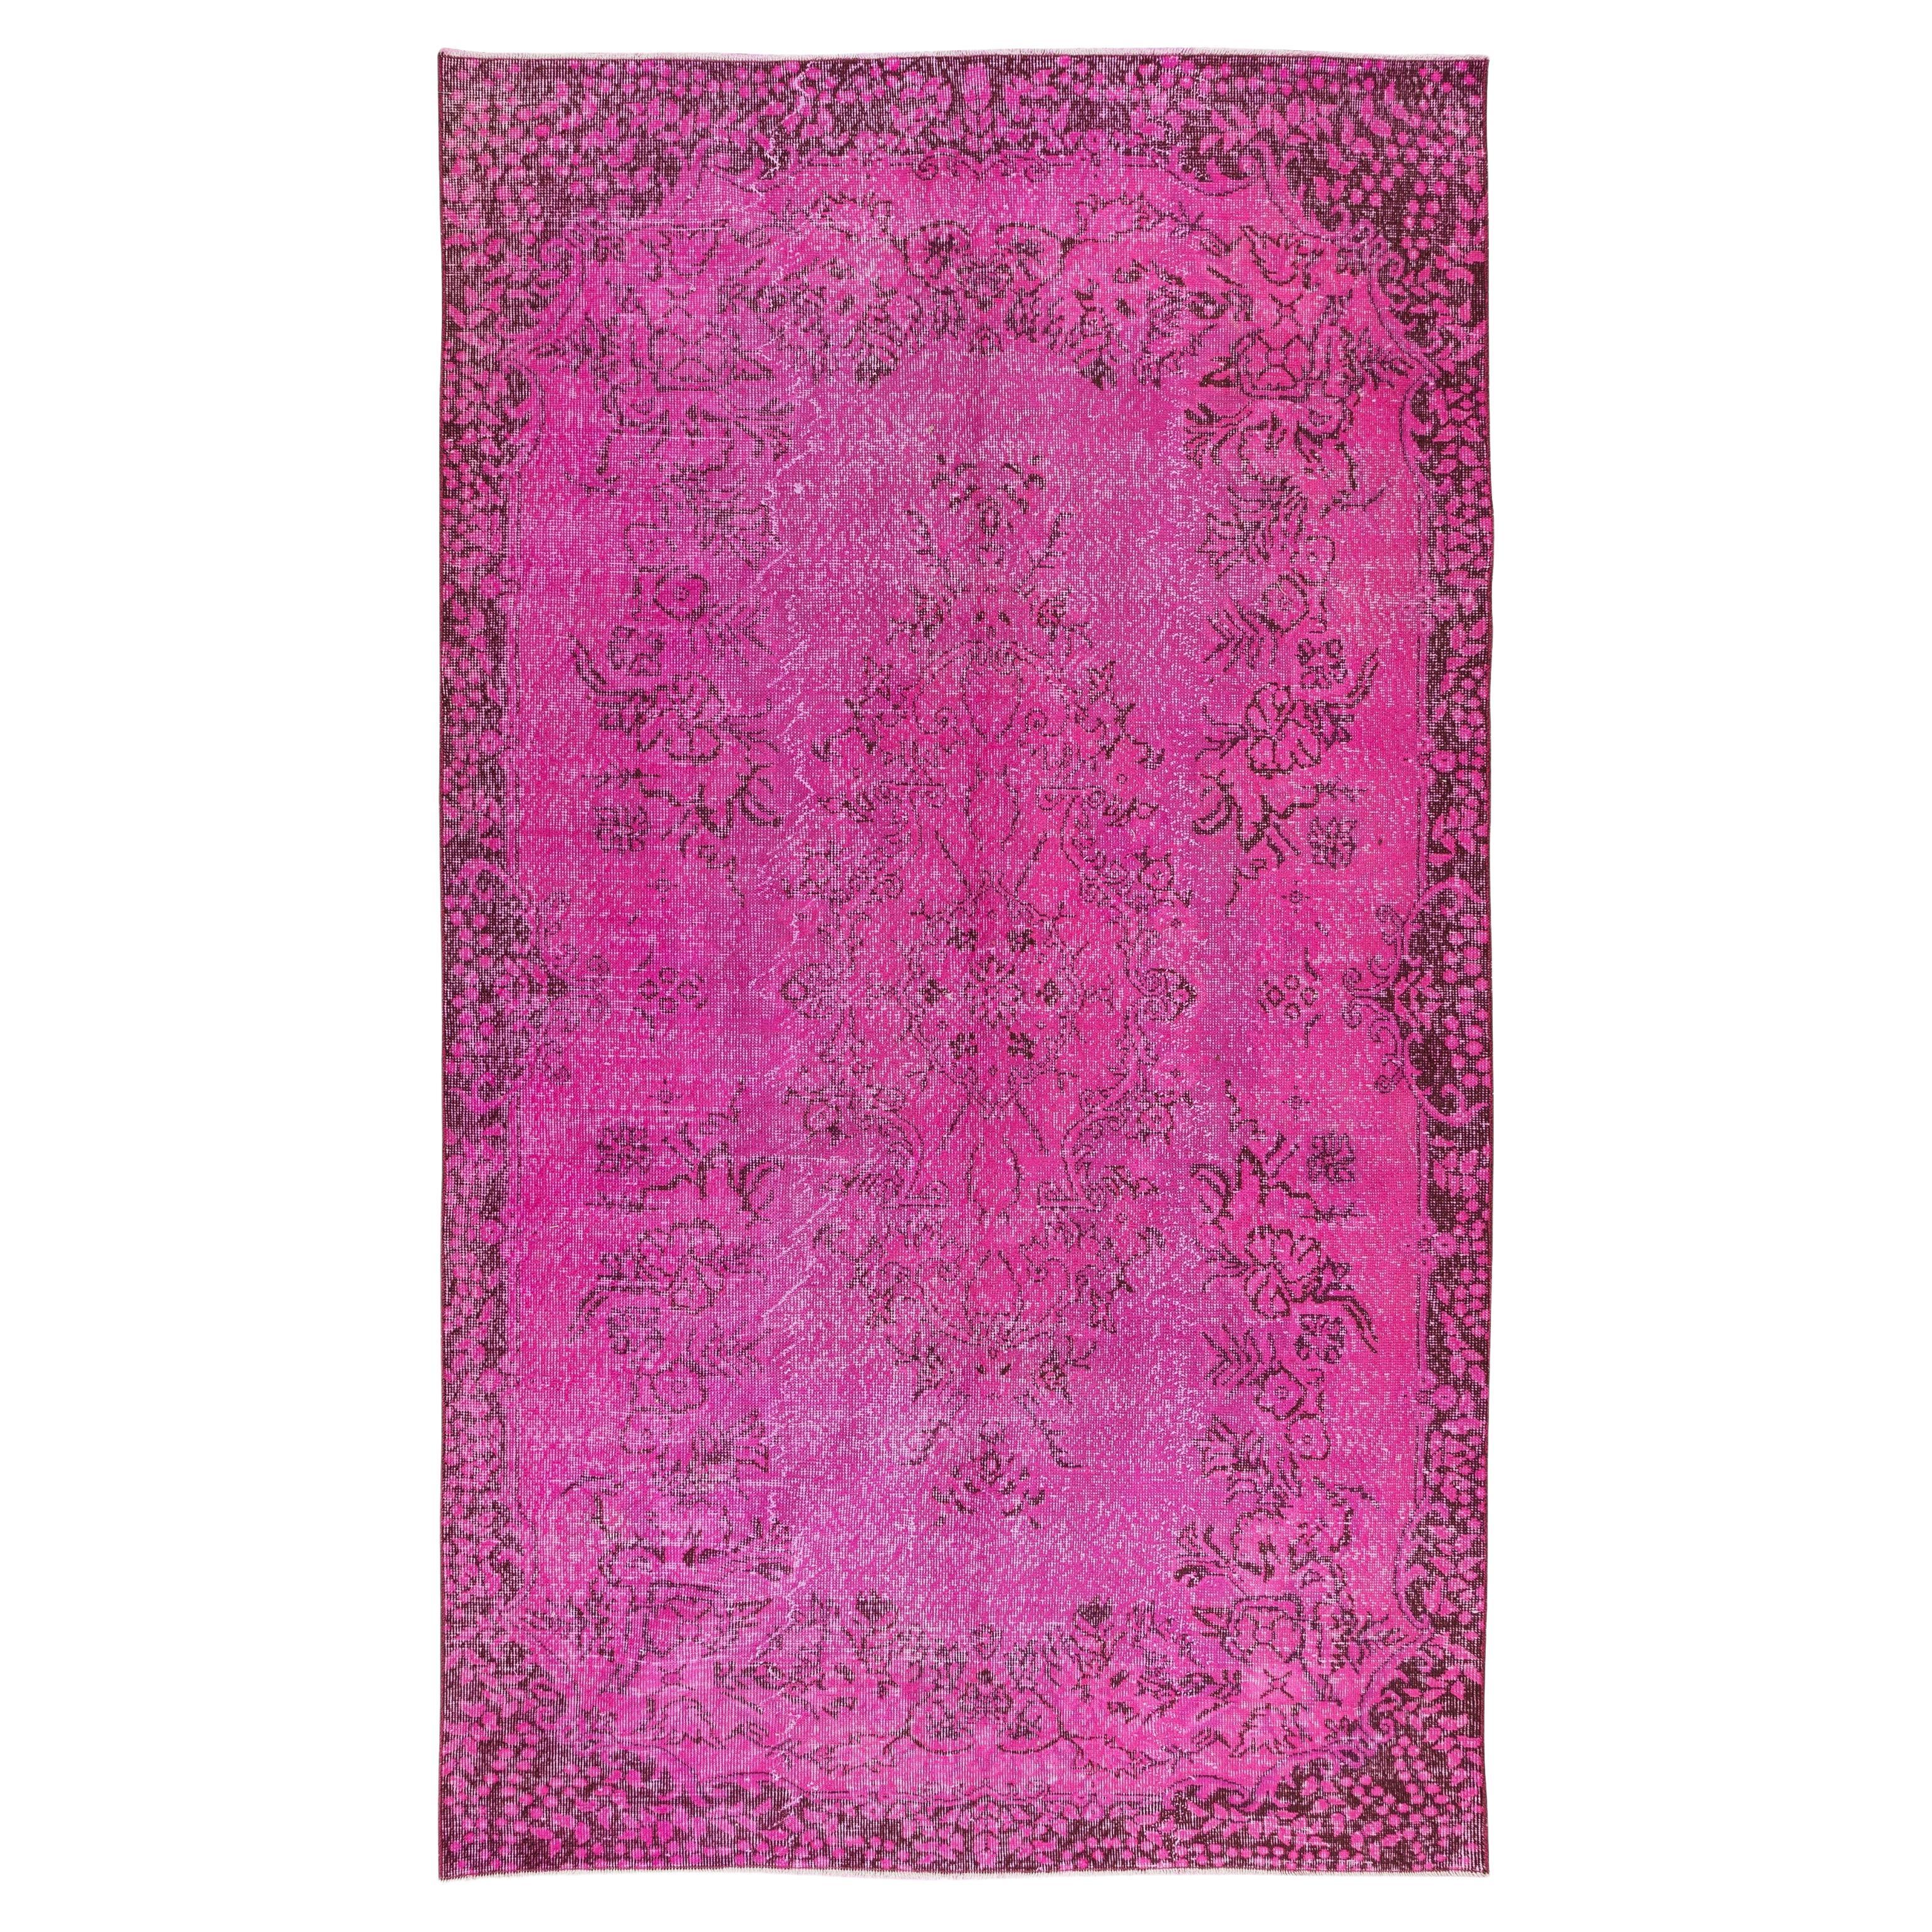 5.6x9,8 Ft handgefertigter türkischer Vintage-Teppich in Rosa mit Medaillon-Design